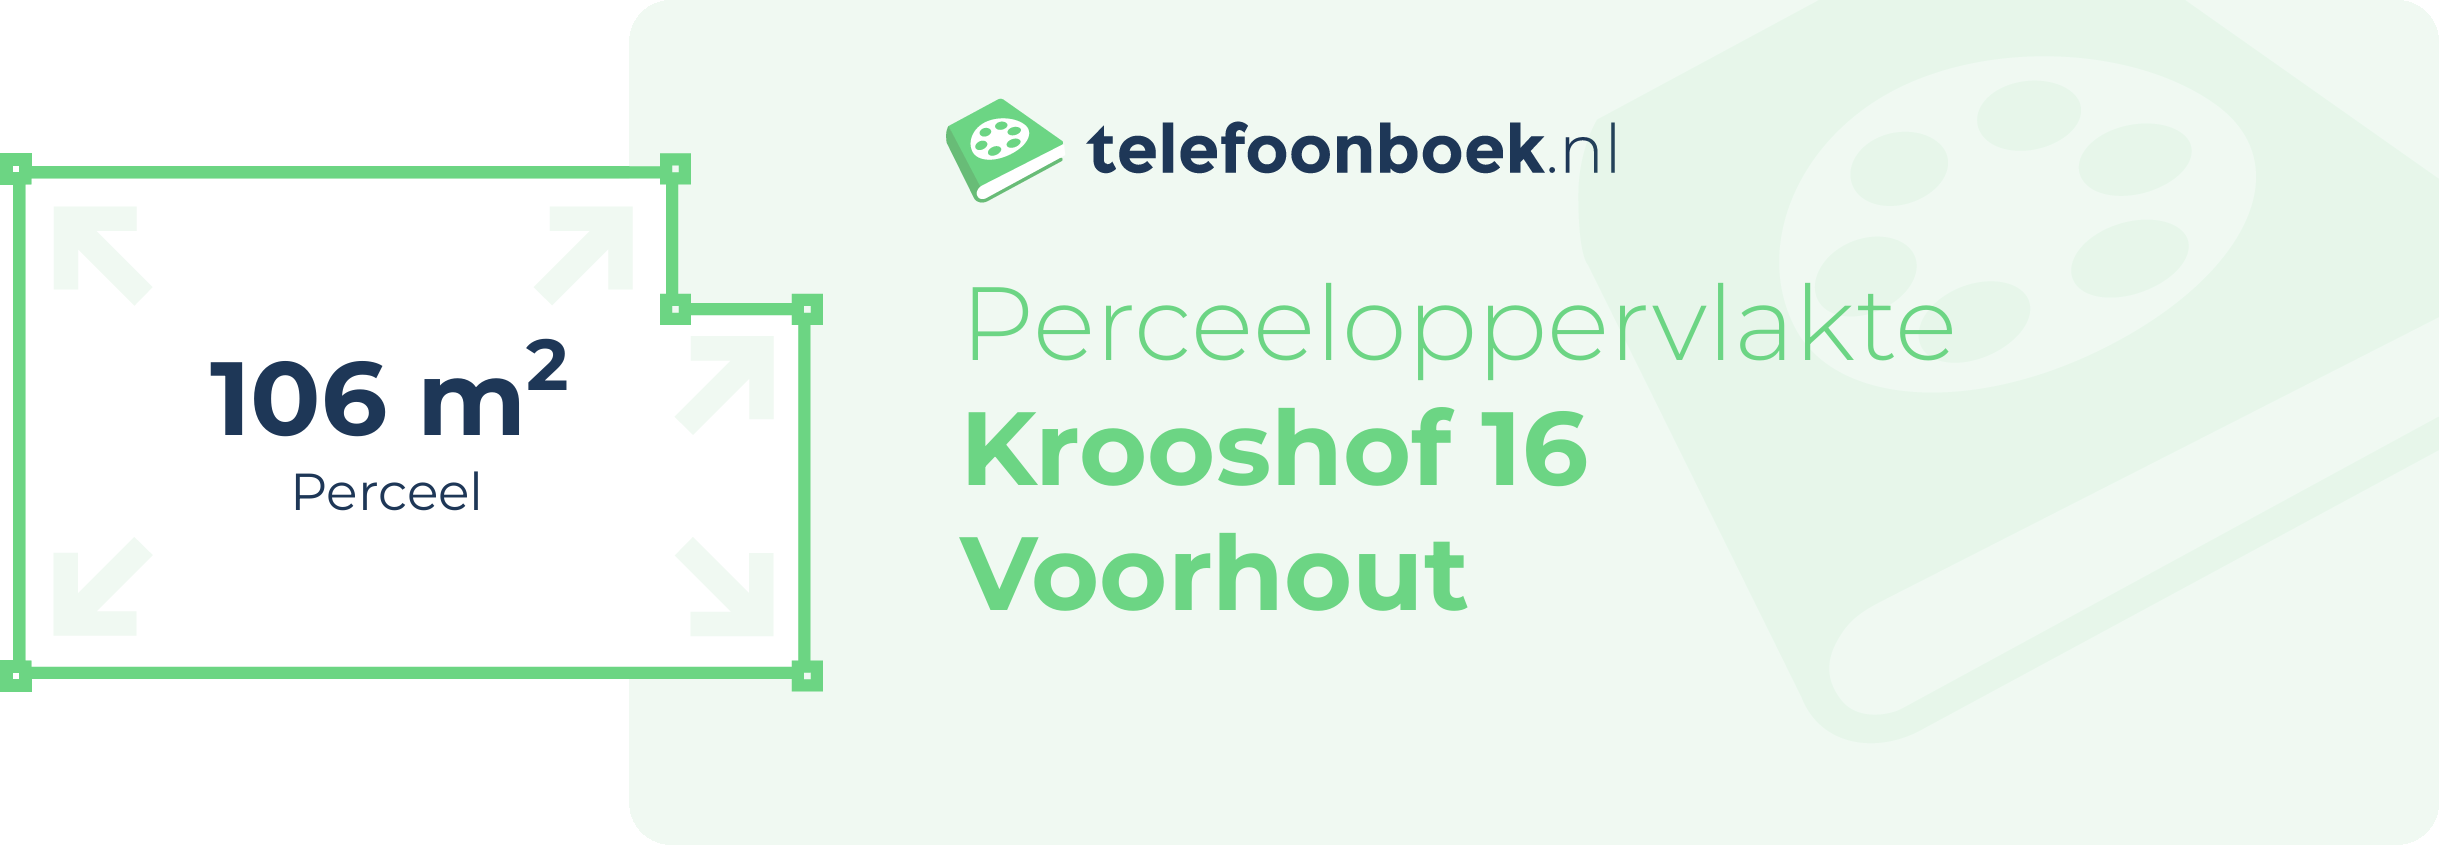 Perceeloppervlakte Krooshof 16 Voorhout